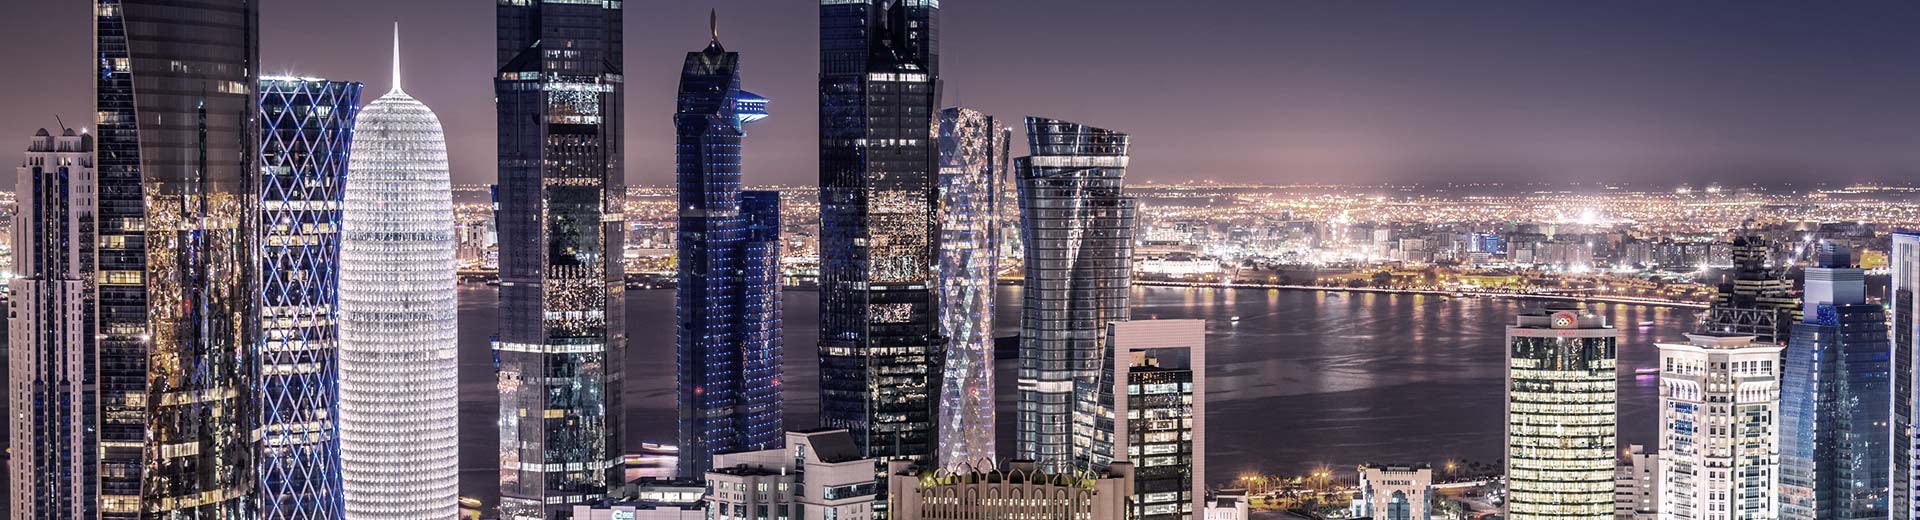 Die abwechslungsreichen und imposanten Wolkenkratzer von Doha Pierce The Nightsky.